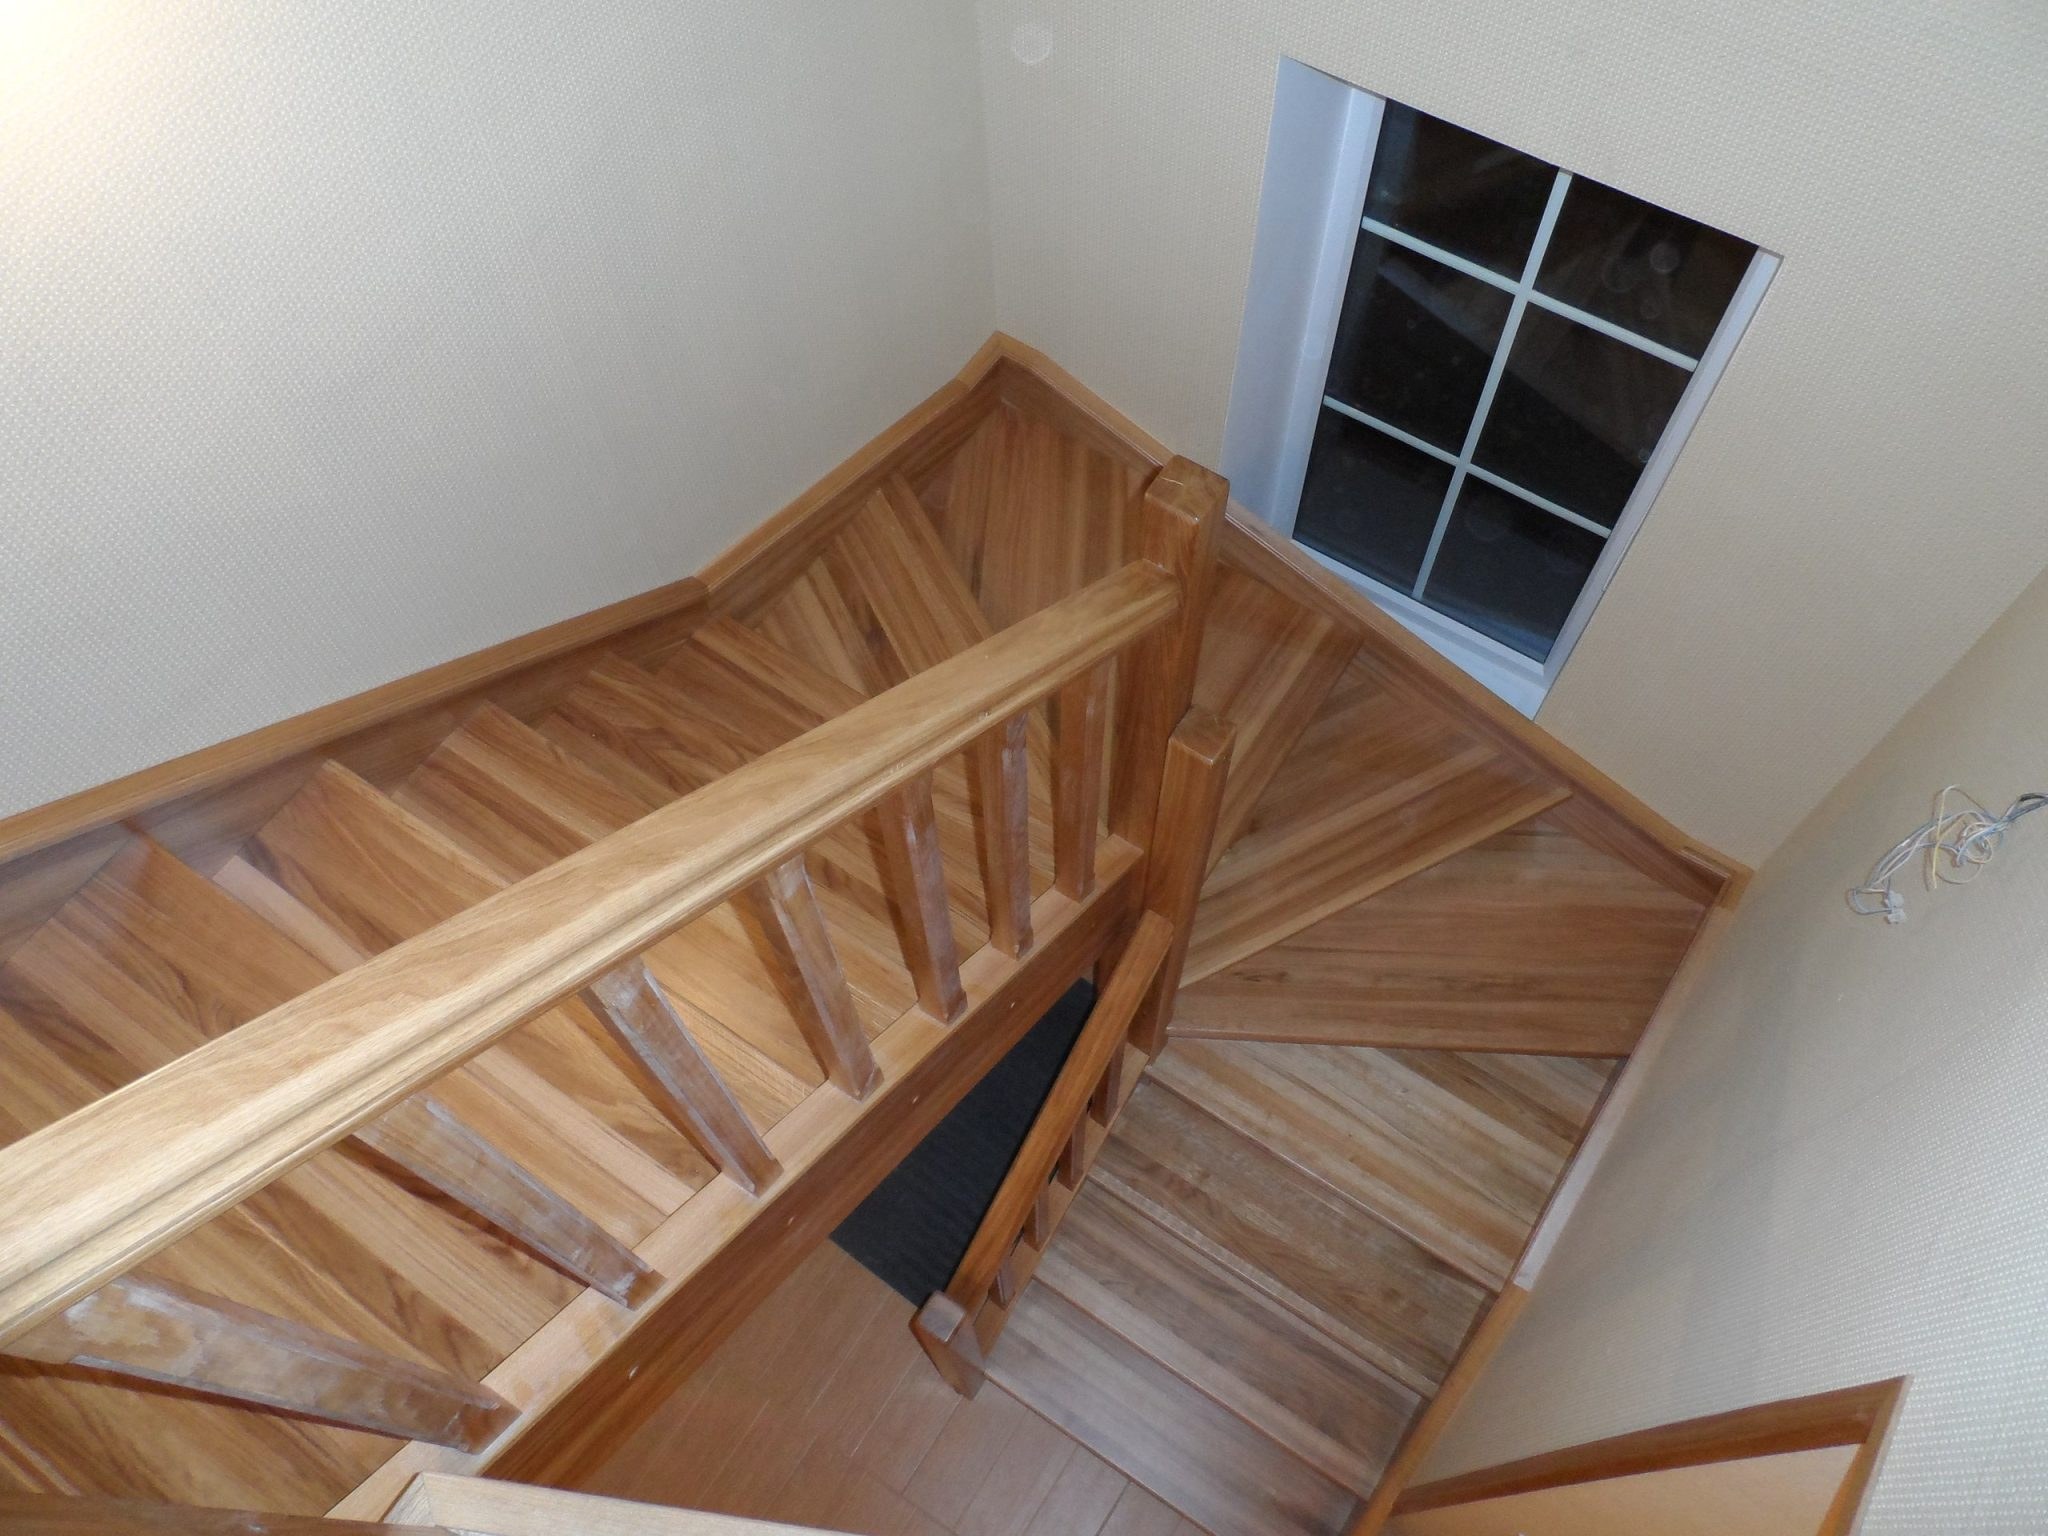 Лестница на второй 180 градусов. Лестница 180 градусов с забежными ступенями. Лестница забежная деревянная. Деревянные лестницы с забежными ступенями на 180 градусов. Лестница забежная деревянная с поворотом на 180 градусов.